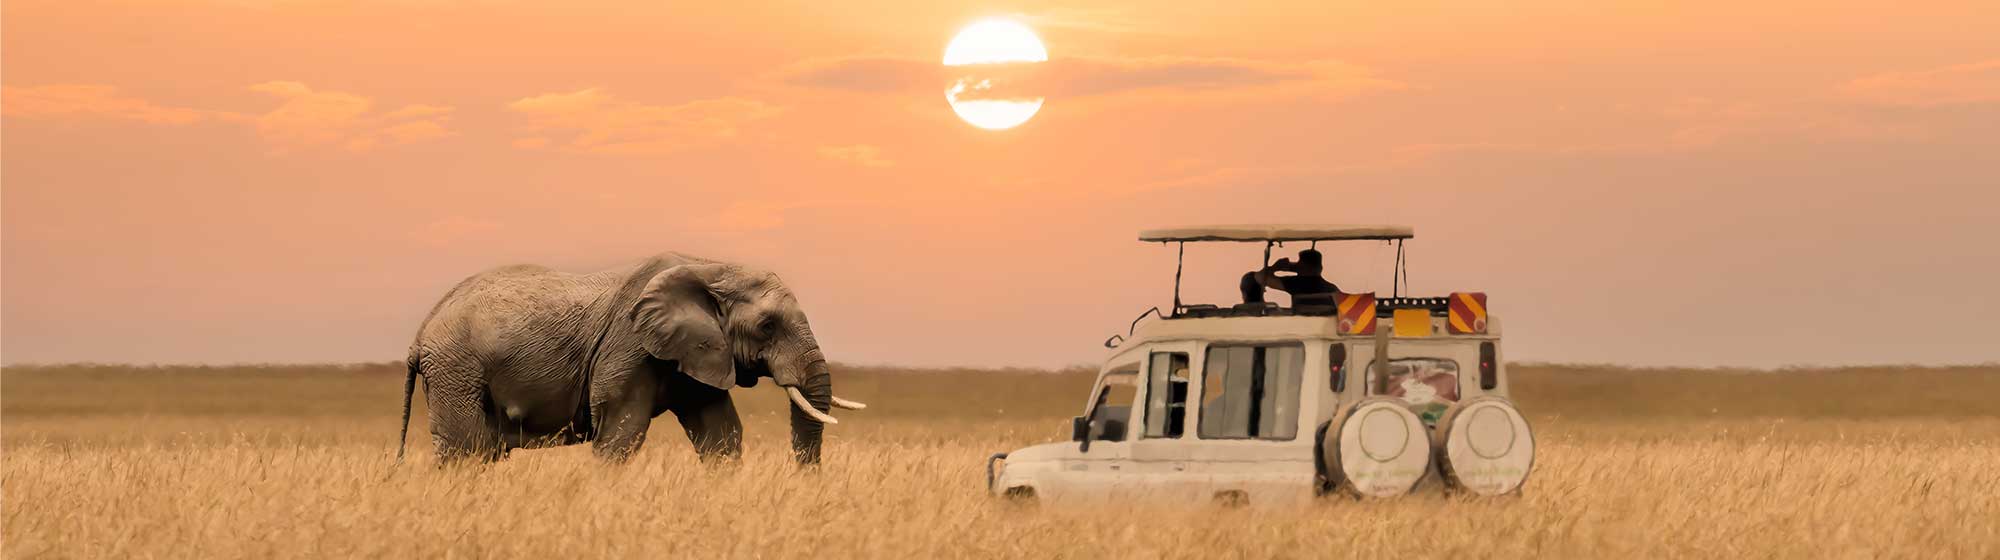 Un éléphant se trouve face à face avec une voiture au cœur de la savane